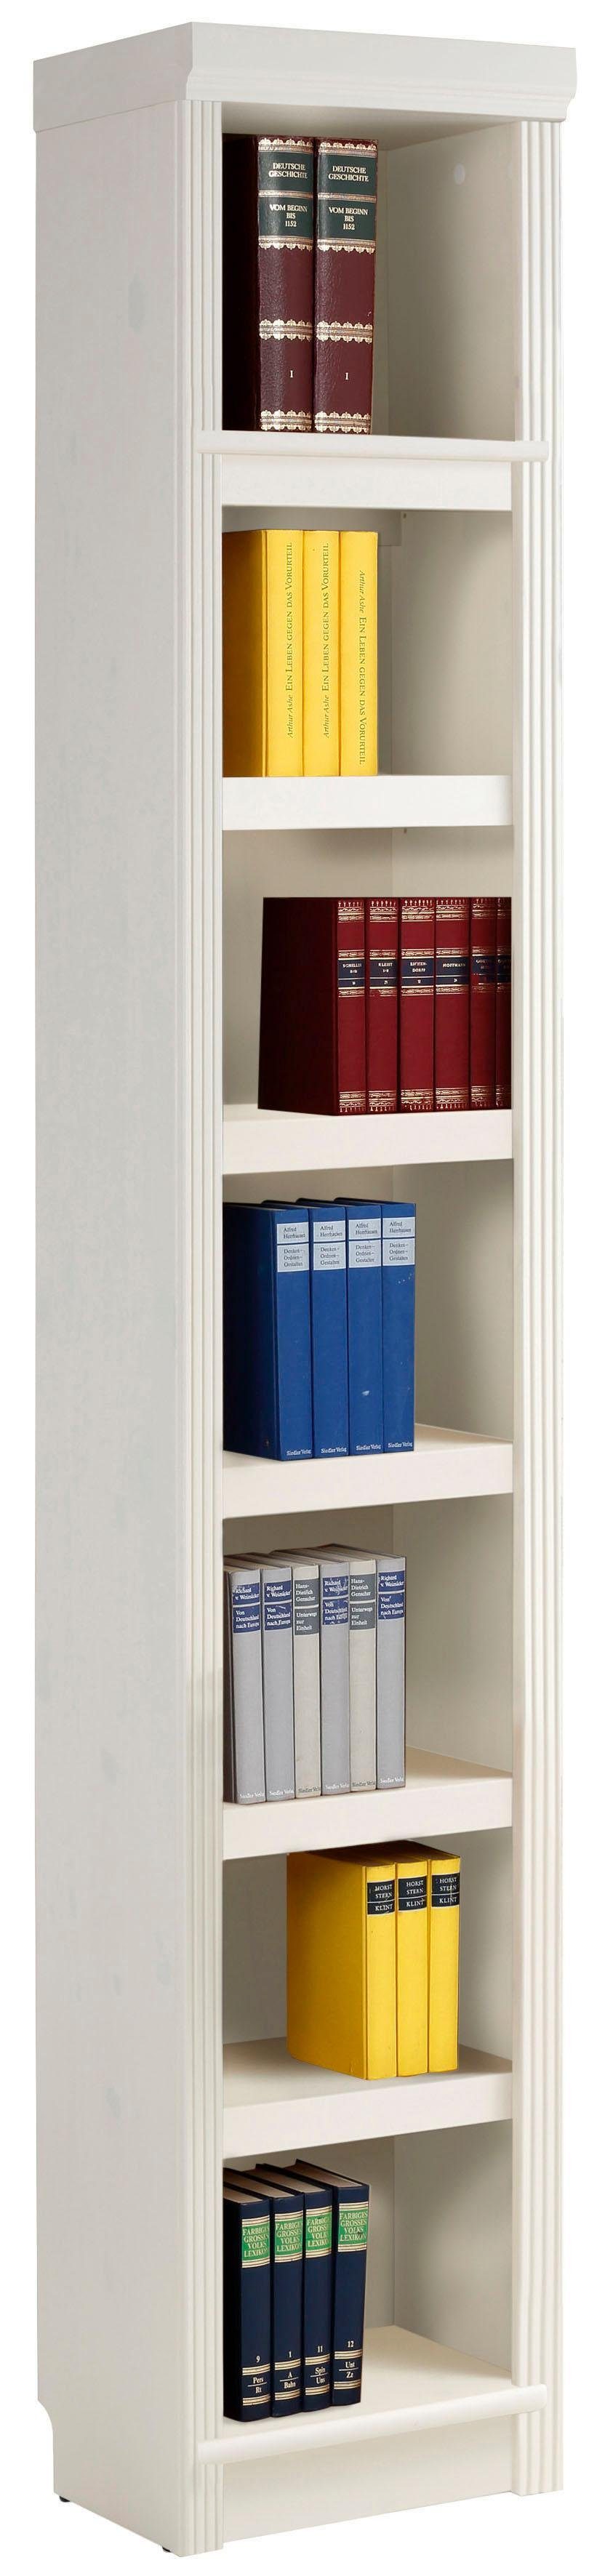 Home affaire Bücherregal Soeren, aus massiver Kiefer, in 2 Höhen, Tiefe 29 cm, mit viel Stauraum